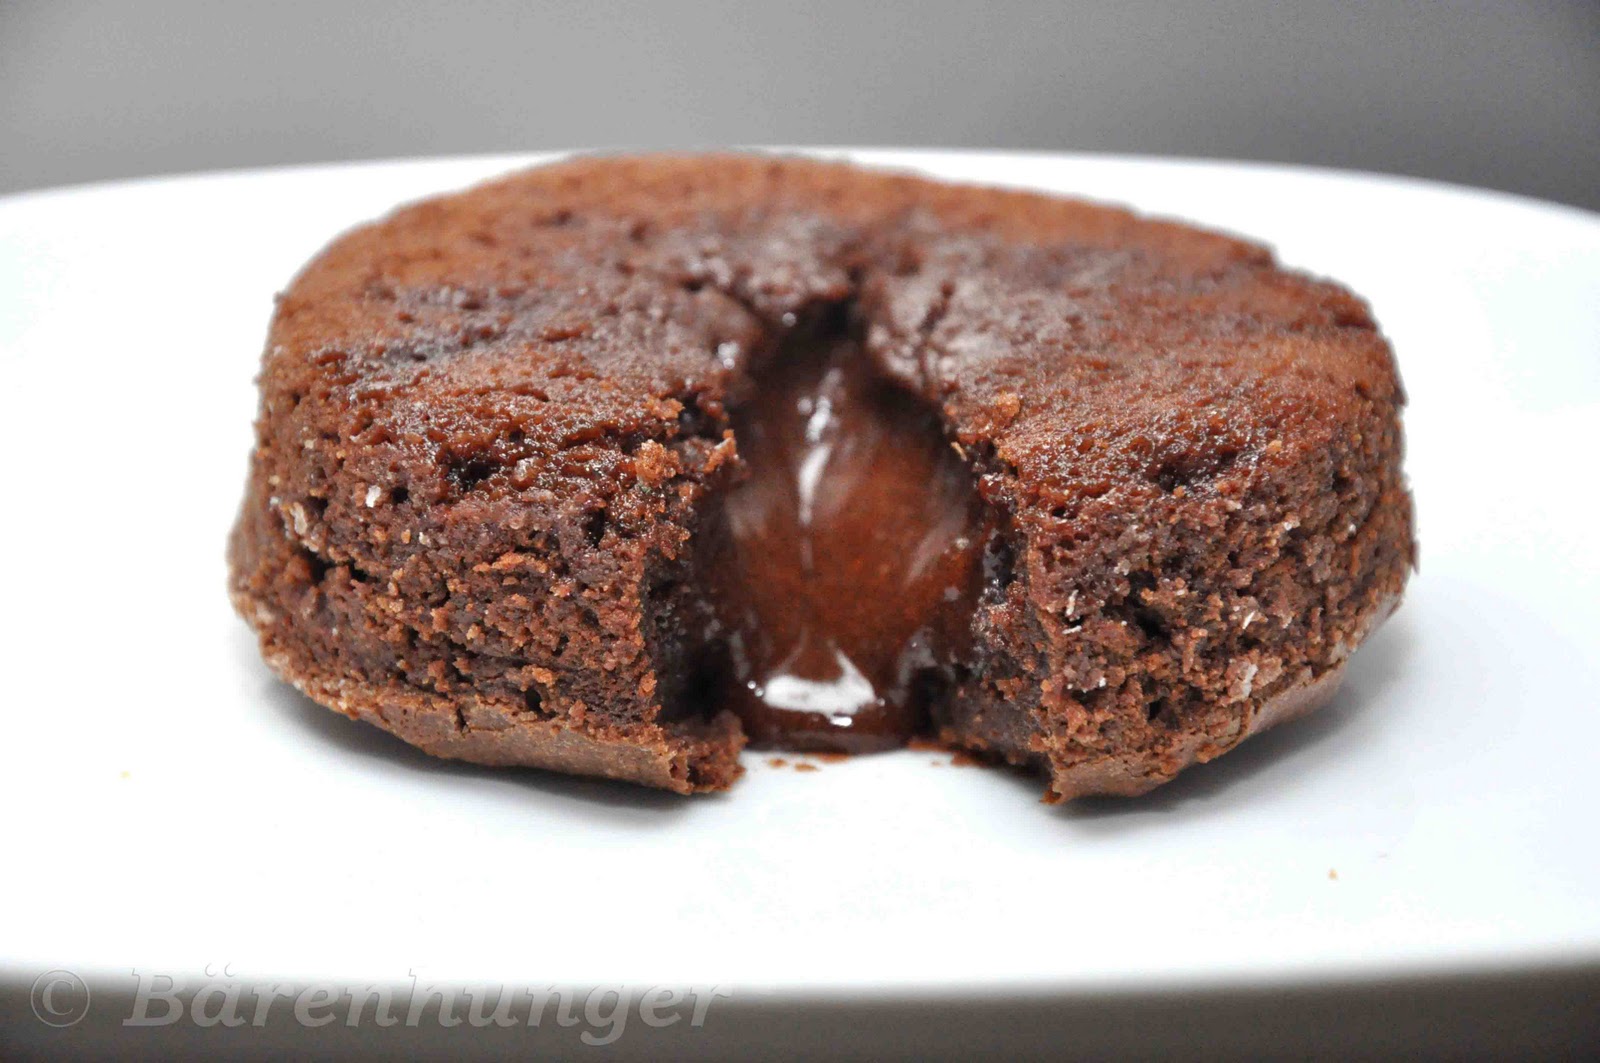 Schokoladenkuchen mit flüssigem Kern